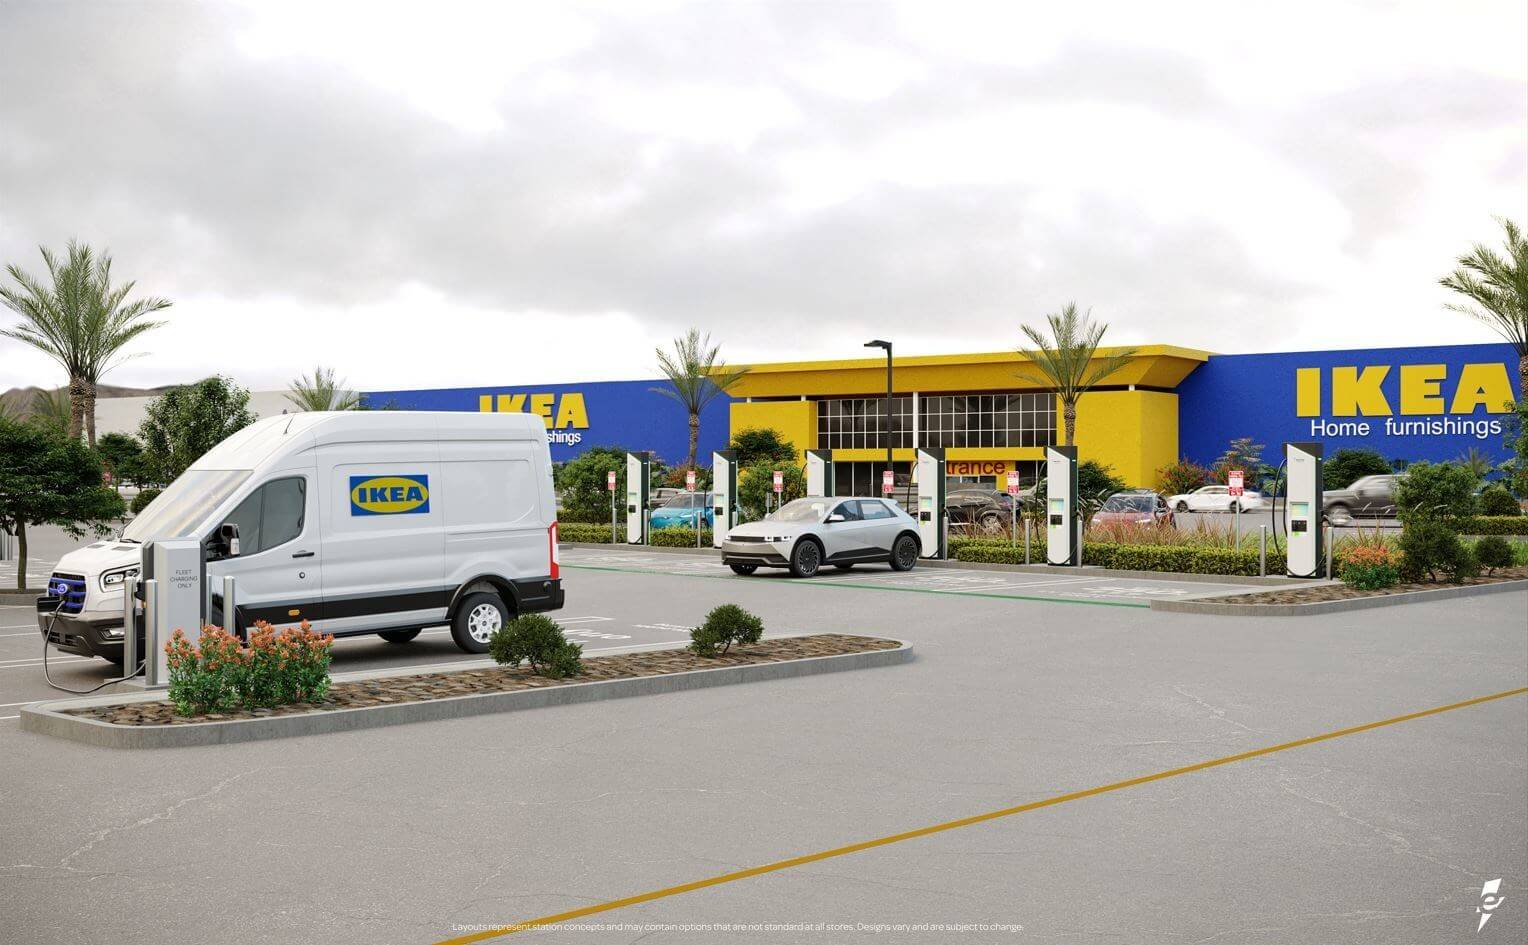 IKEA увеличит количество зарядных устройств для электромобилей в четыре раза благодаря партнерству с Electrify America